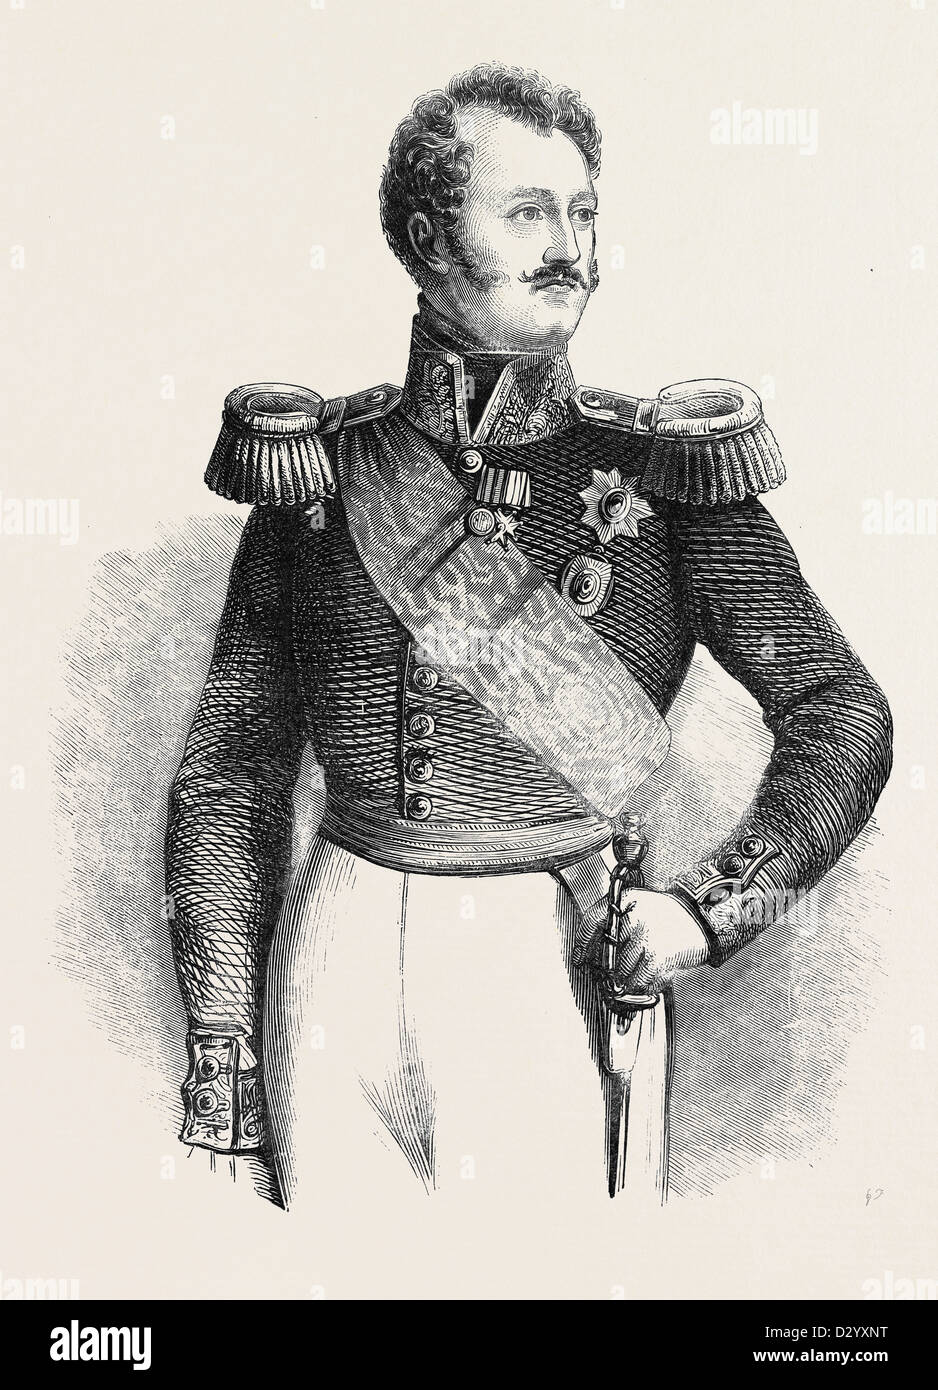 Su Majestad Imperial, el emperador de Rusia. Dibujado por BAUGNIET. Foto de stock